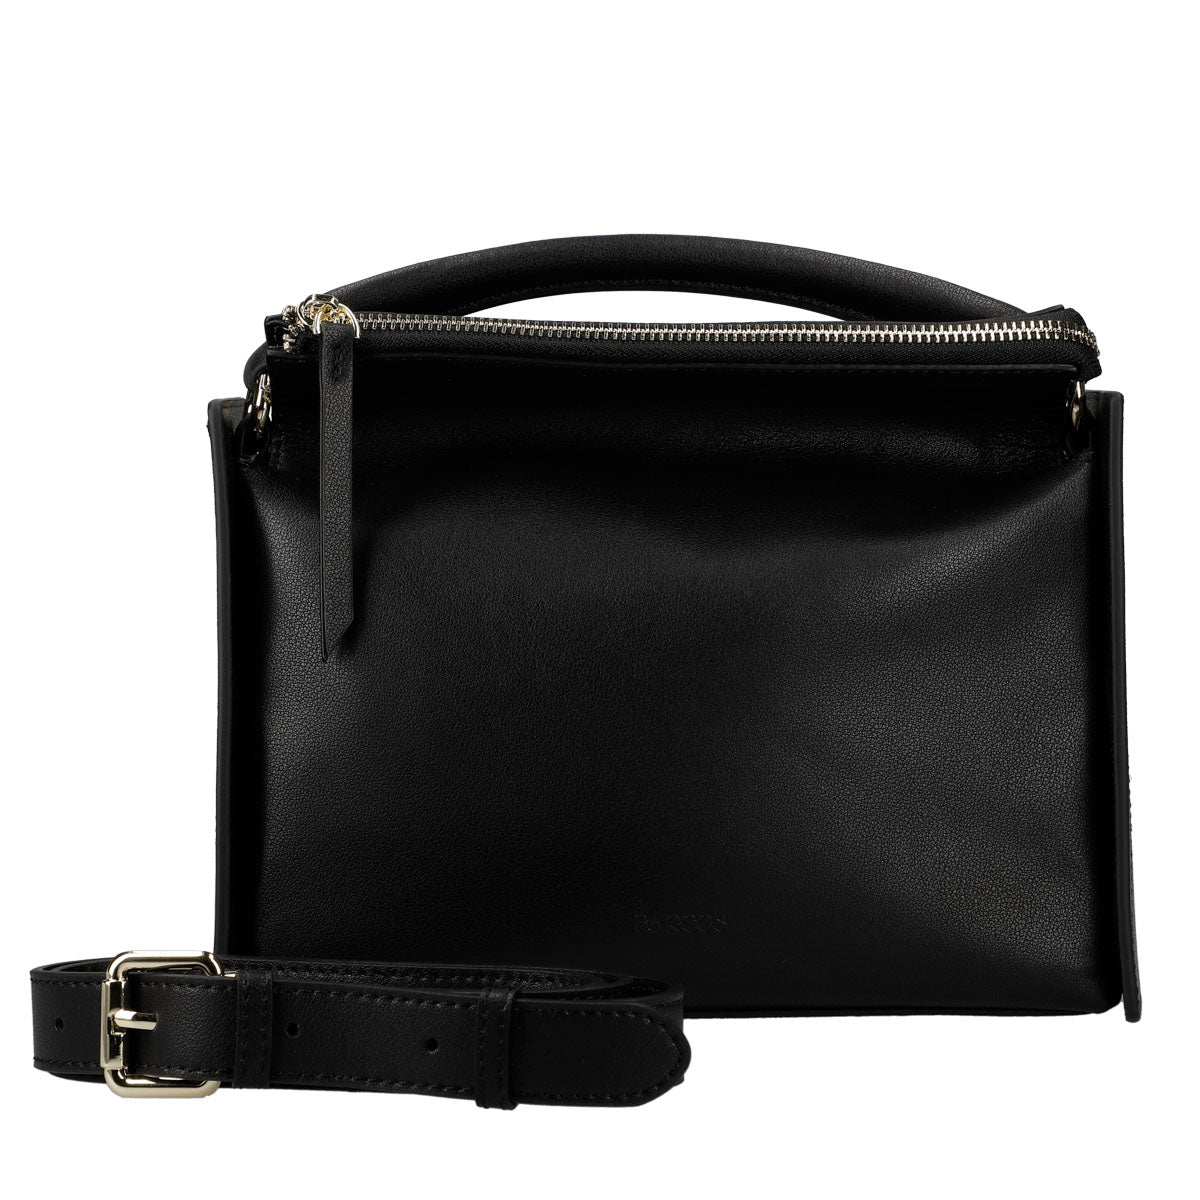 Handbag One Handle Rectangle Leather Bag with Shoulder Strap